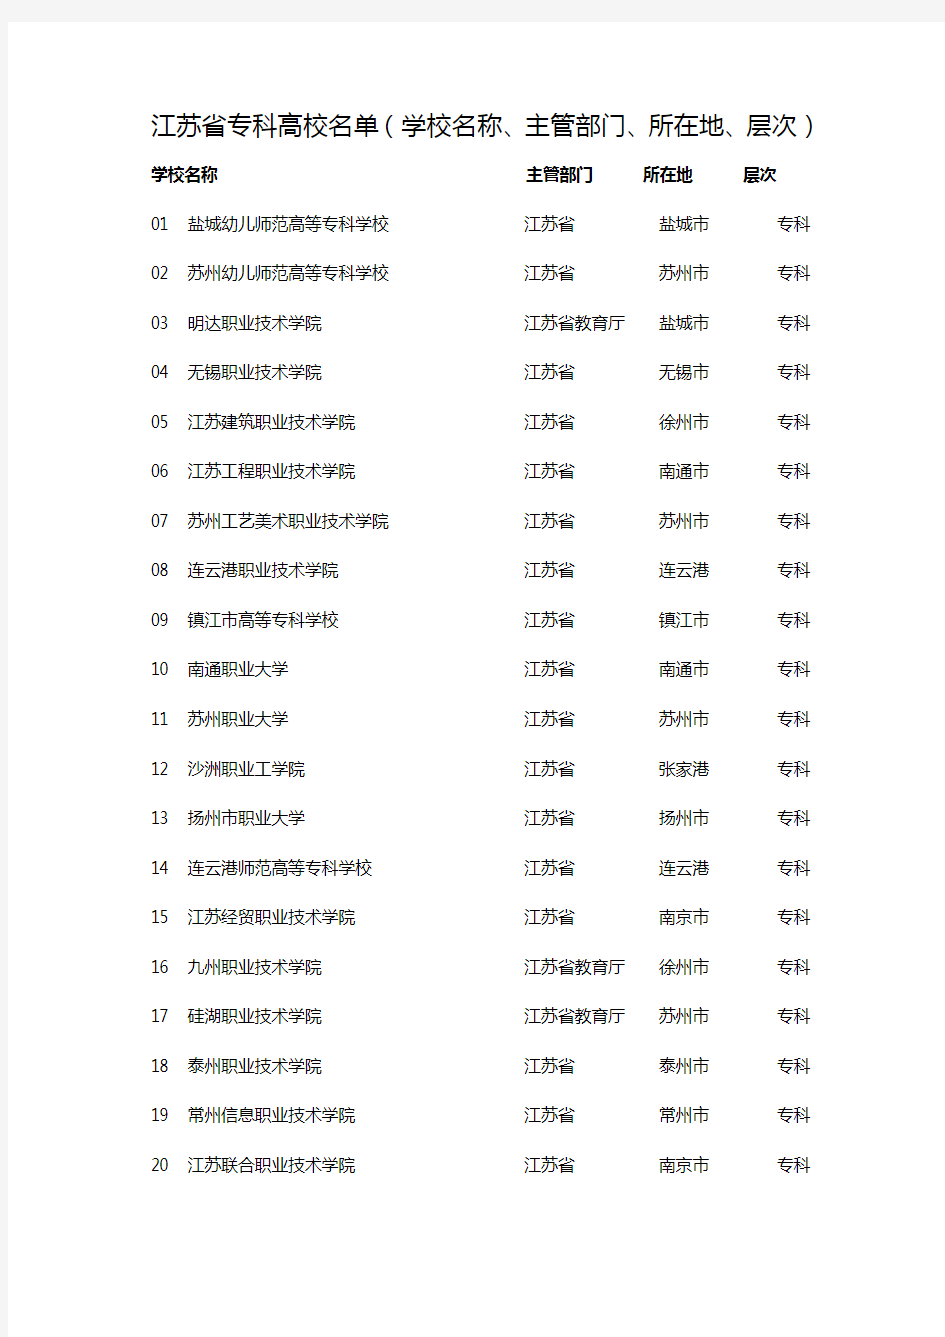 江苏省专科高校名单(学校名称、主管部门、所在地、层次)